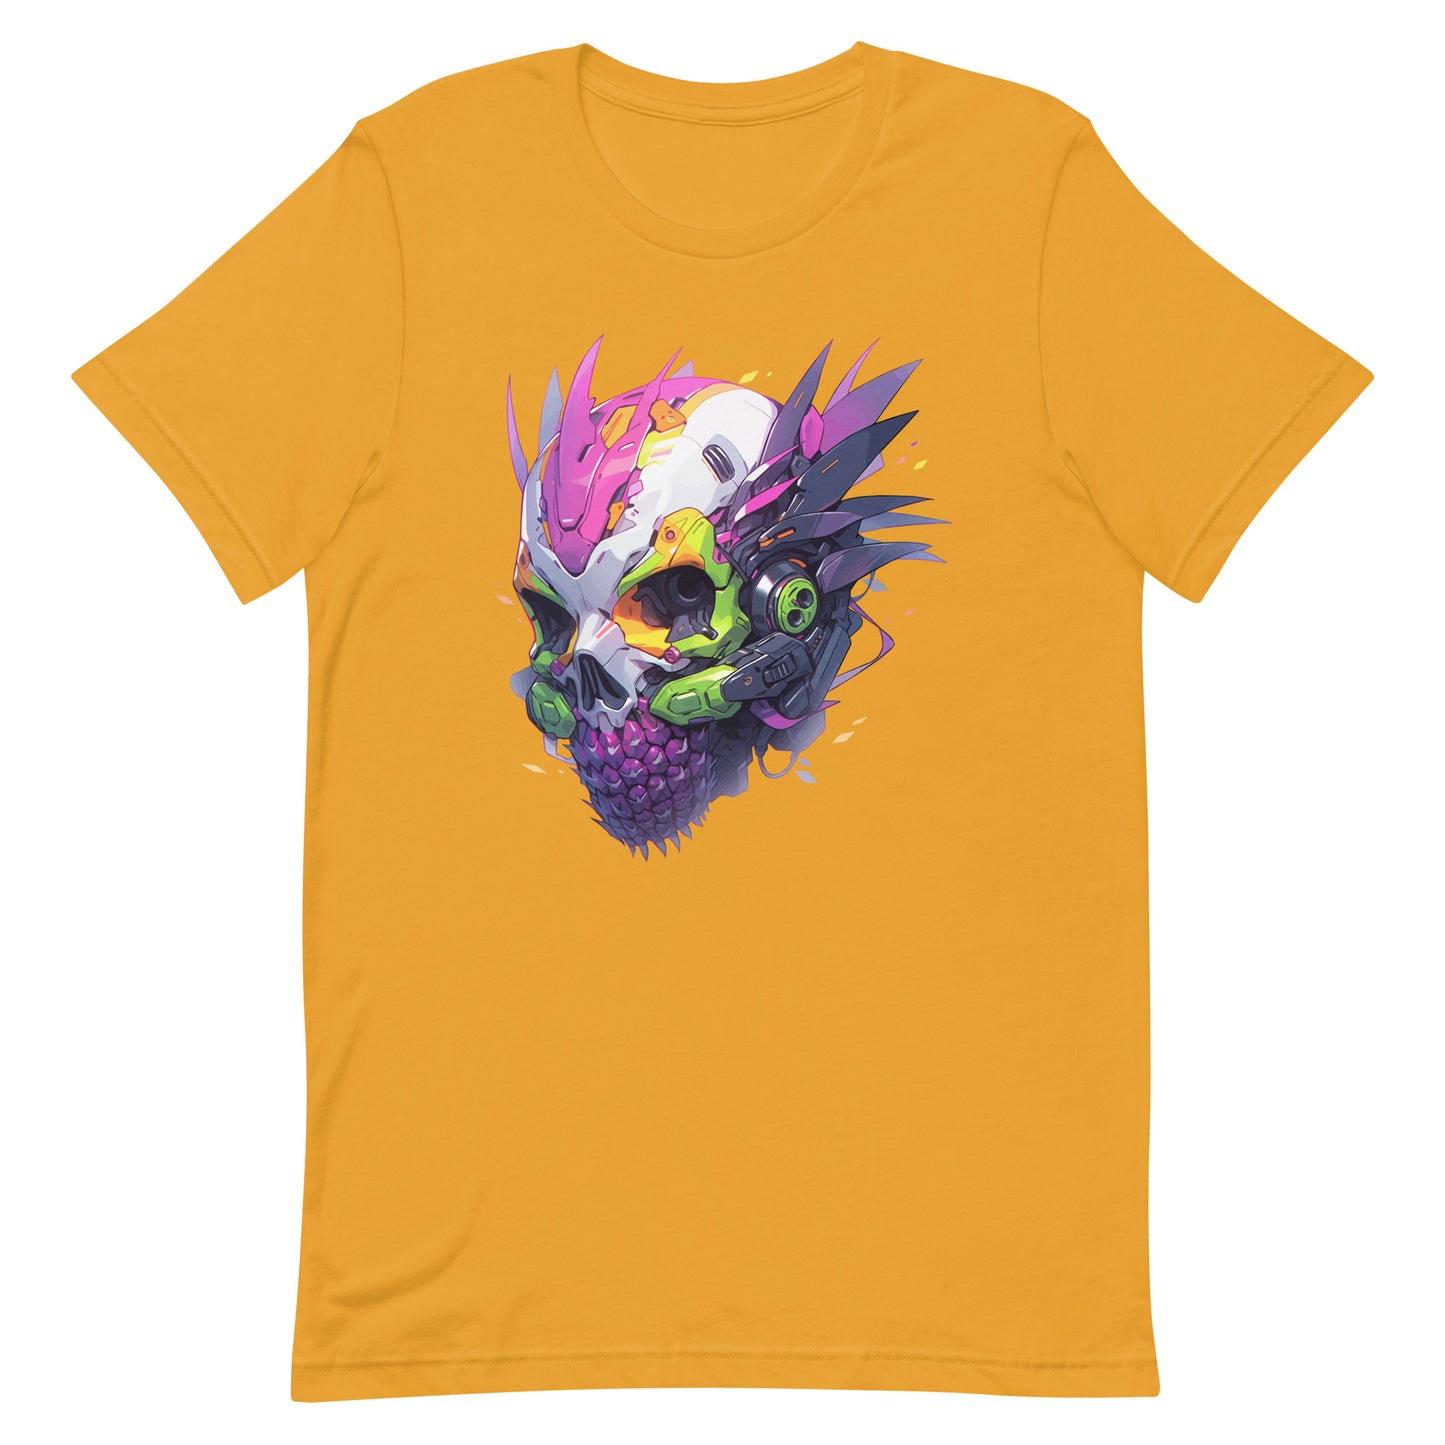 Cyber pineapple skull, Fantastic cyborg head, Pineapple monster Pop Art, Fantasy fruit illustration - Unisex t-shirt